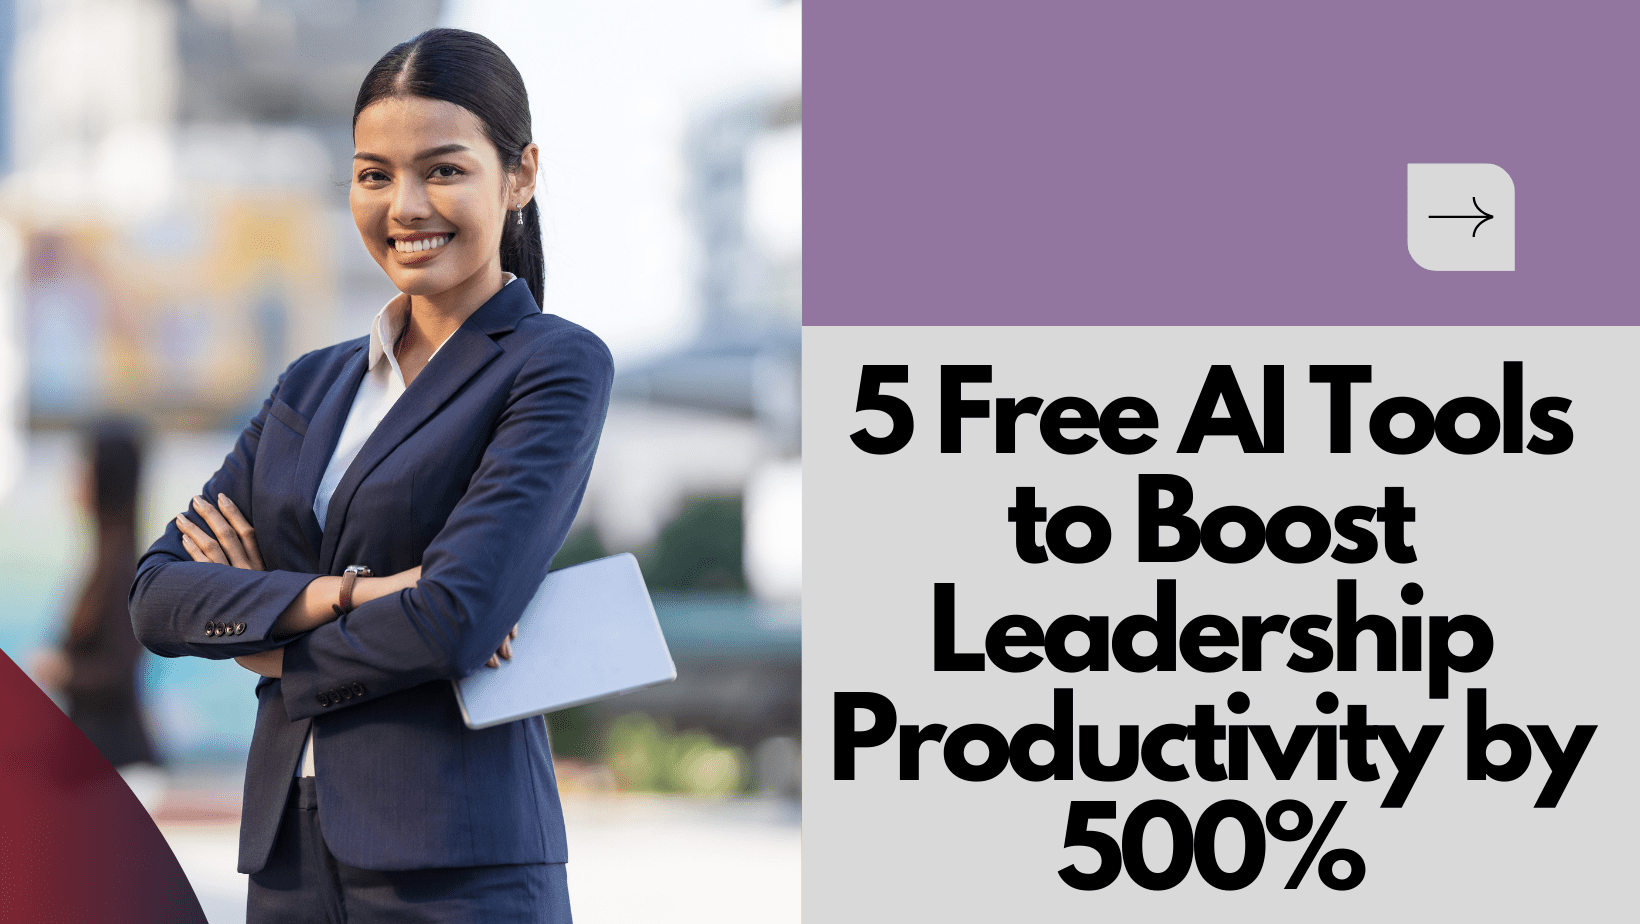 Cover Image for 5 herramientas de IA gratuitas para aumentar la productividad de los líderes en un 500%.